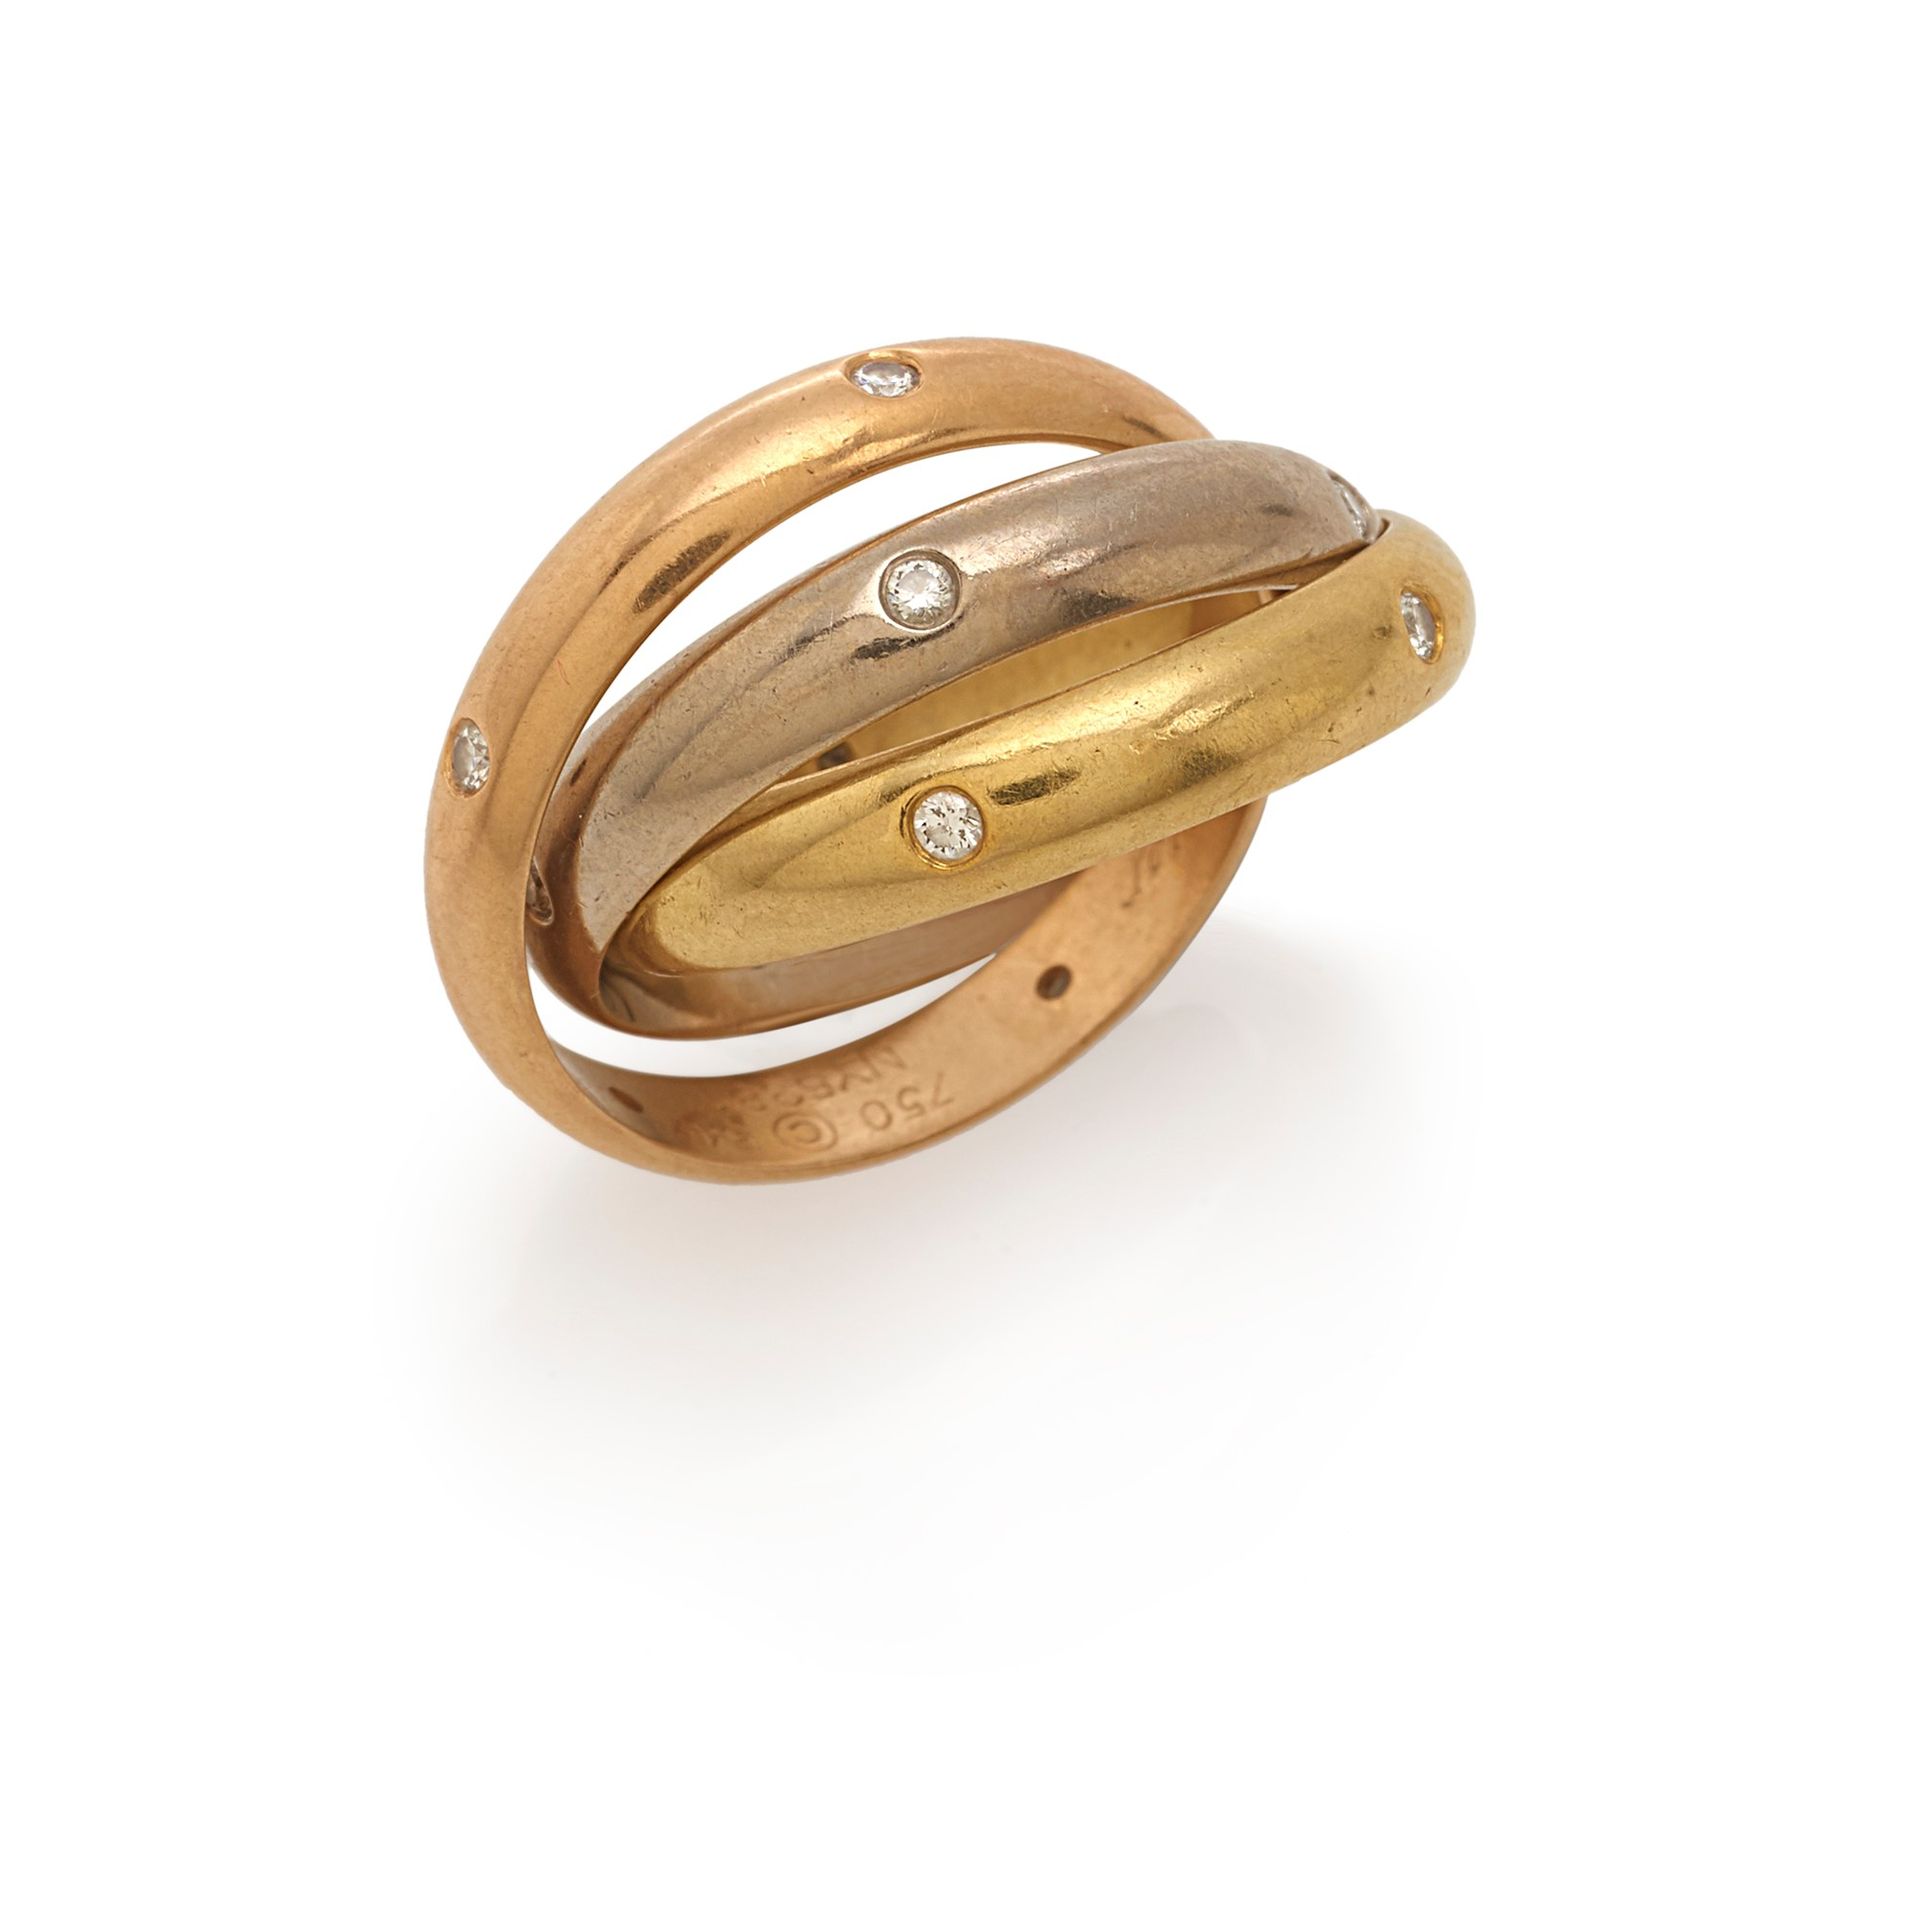 CARTIER 卡地亚 "三位一体 "戒指，18K黄金、红金和白金，明亮式切割钻石共约0.30克拉

尺寸15-54

重量11.53克

卡地亚 "三位一体 &hellip;